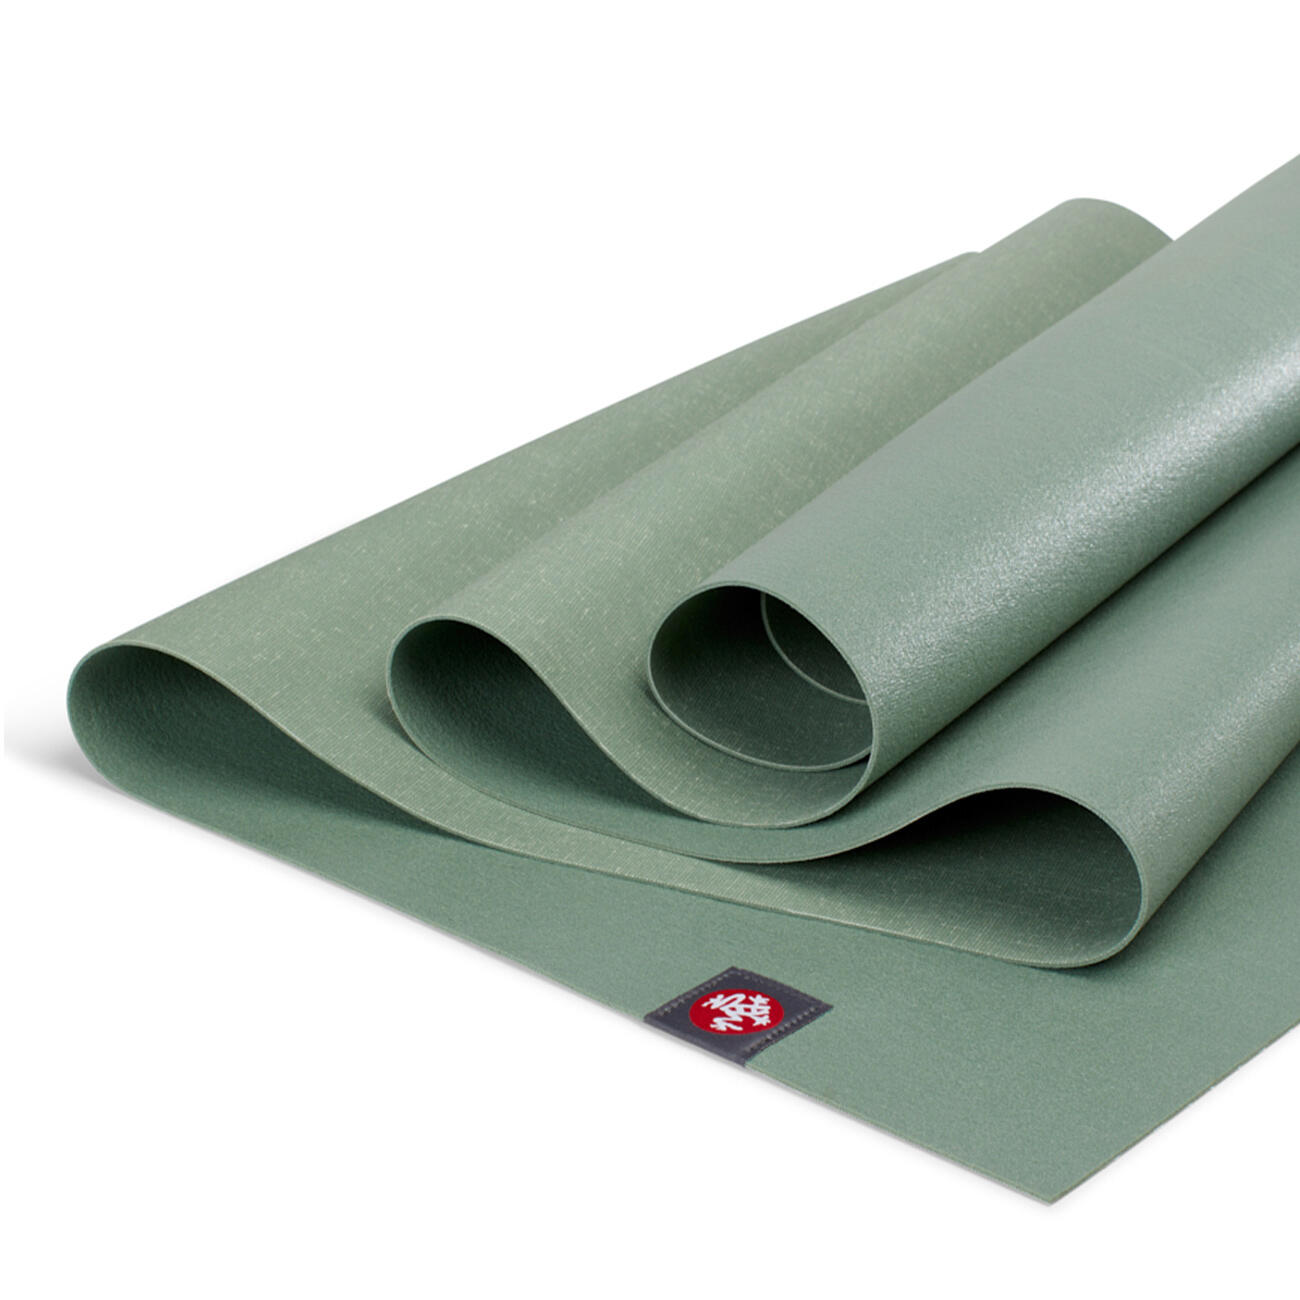 Manduka eKO SuperLite Travel Yoga Mat 1.5mm - Leaf Green 4/4